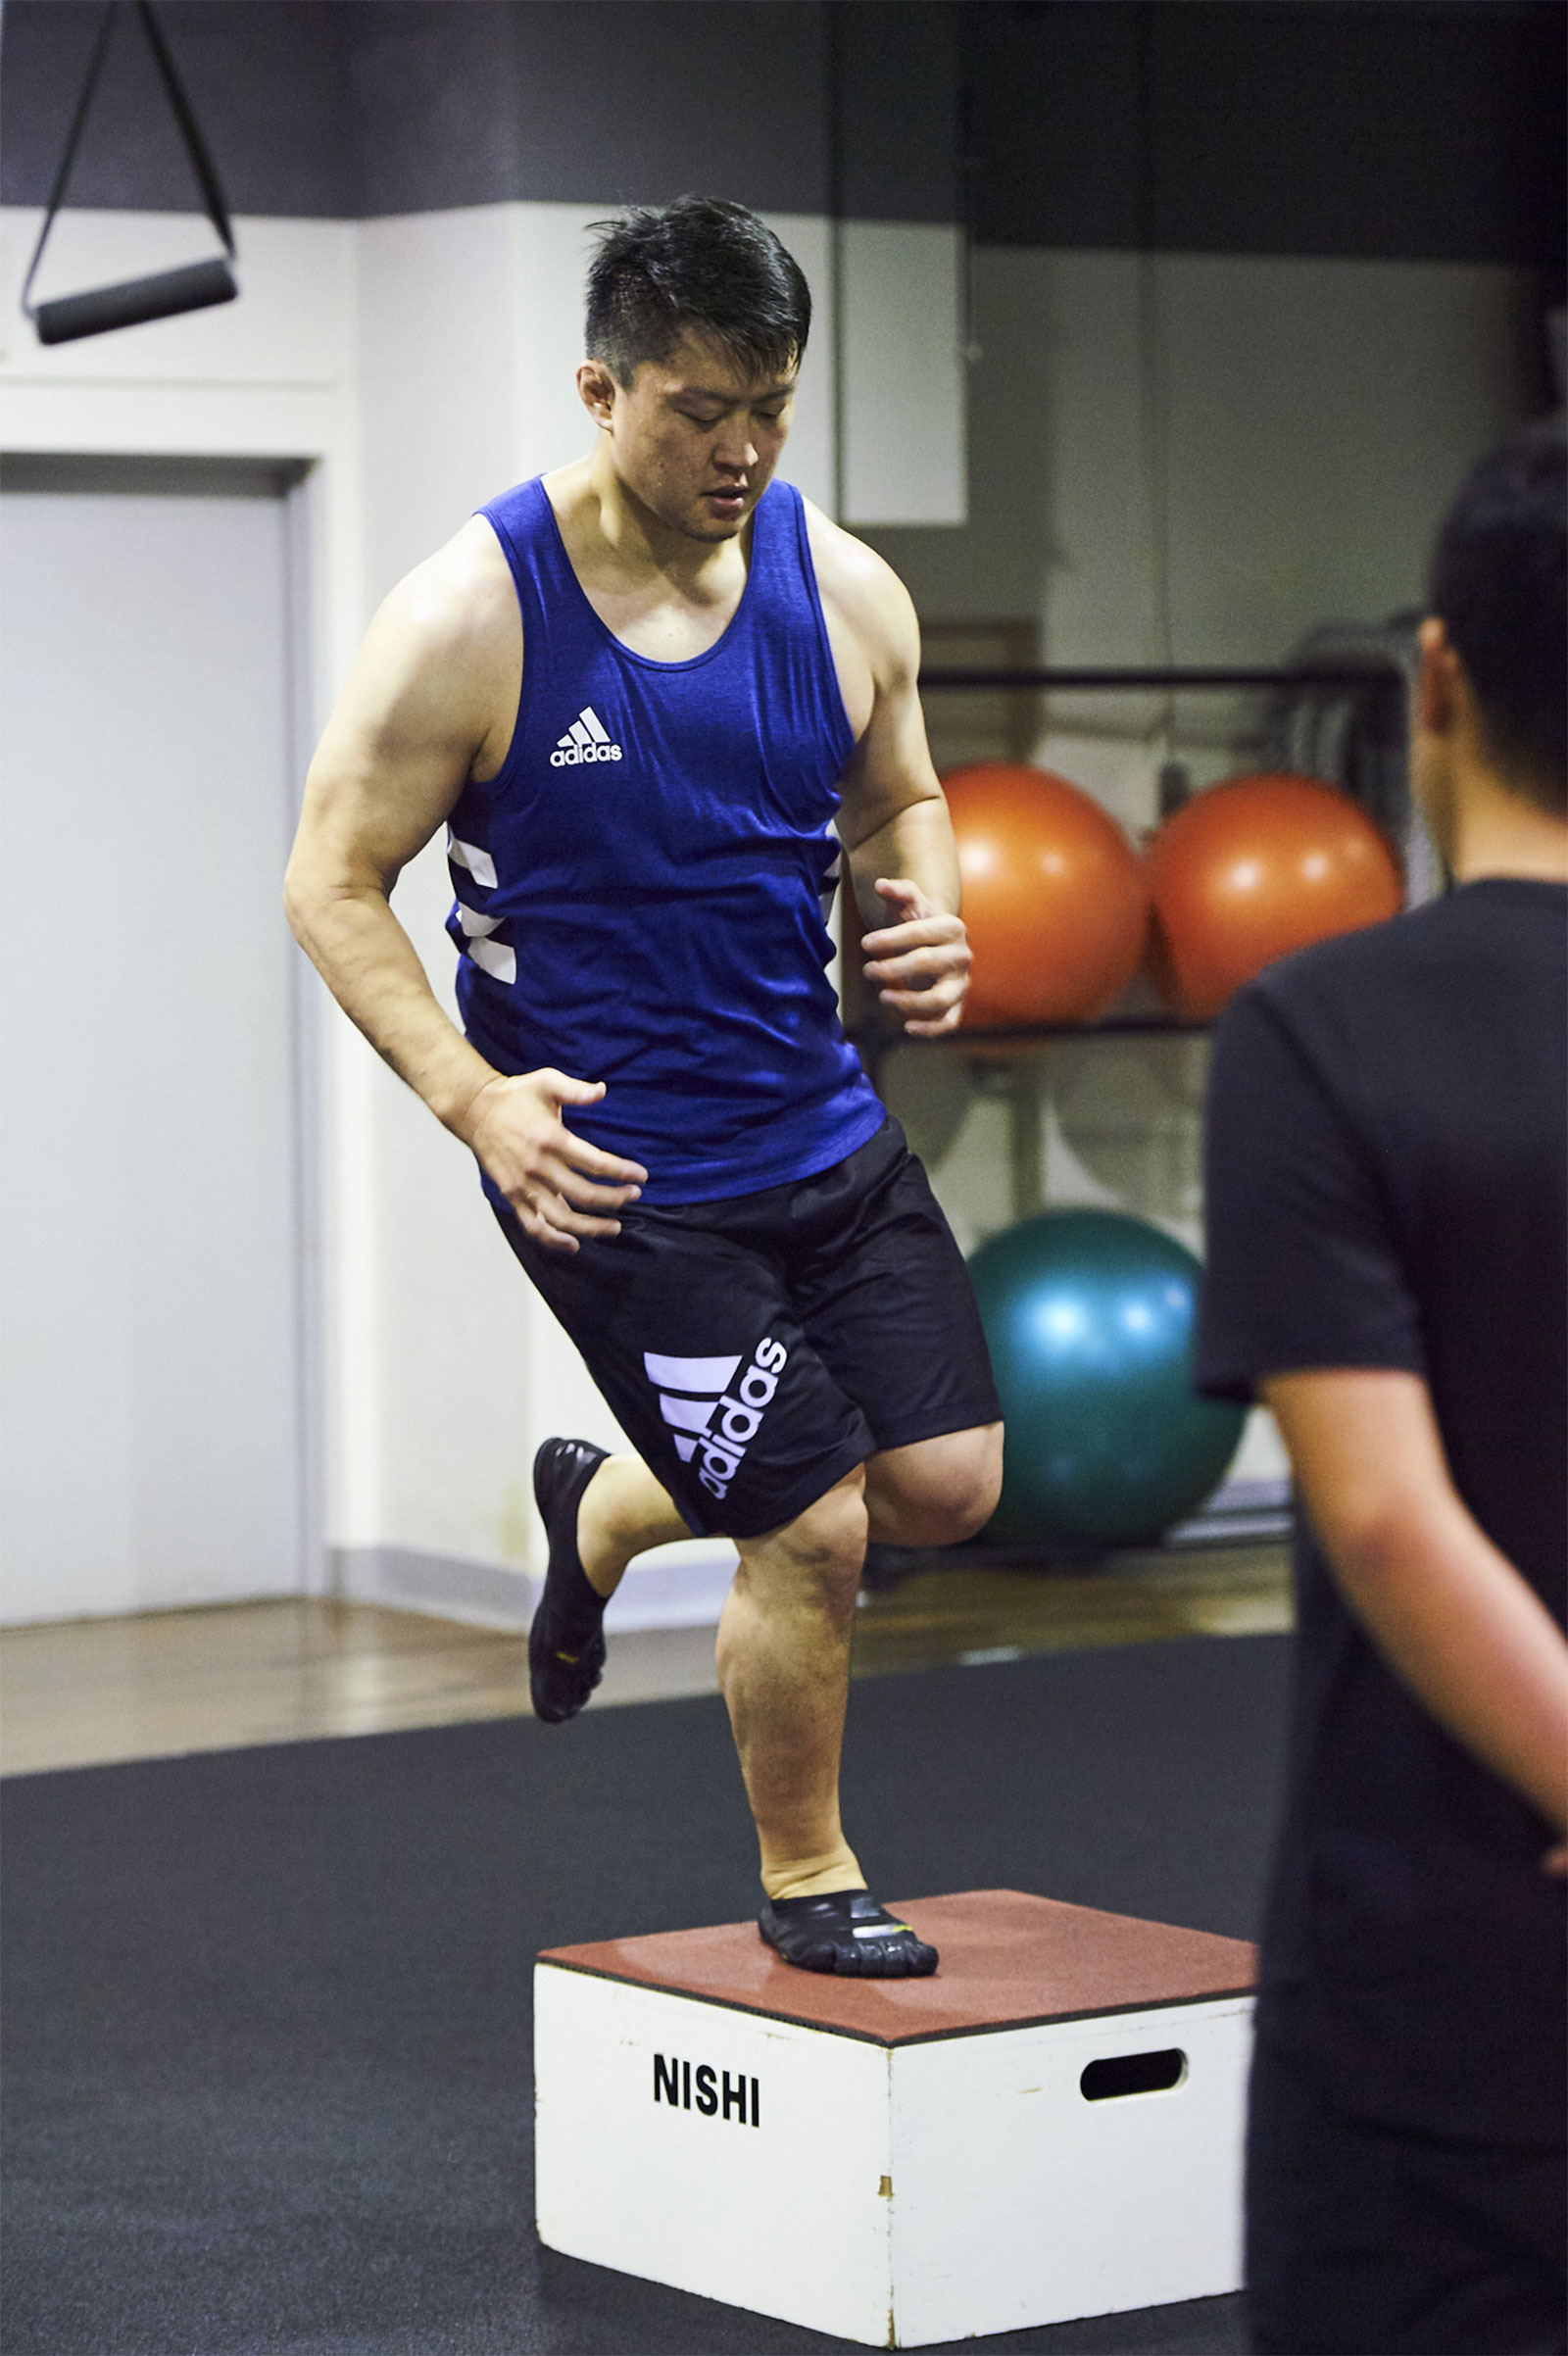 片脚で行うボックスジャンプ。前後方向だけでなく、左右方向も行う。原沢選手の得意技である内股のような、片脚でバランスをとりながら大きな力を発揮する動きを安定させるトレーニング。